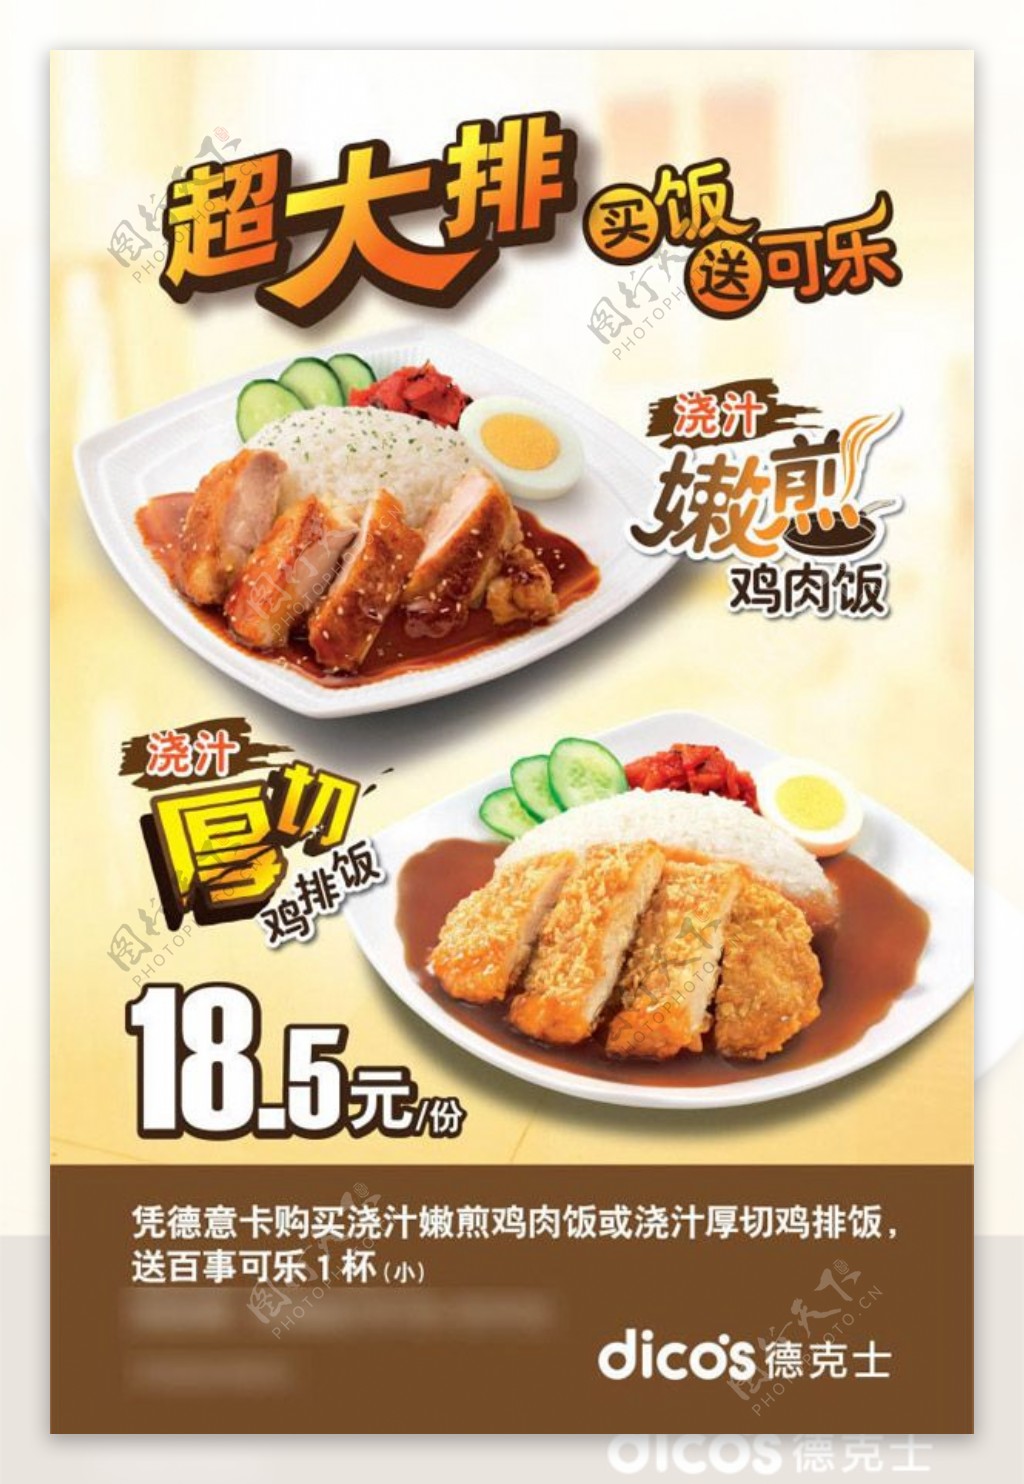 尚德克士鸡肉饭菜单海报设计ai素材下载